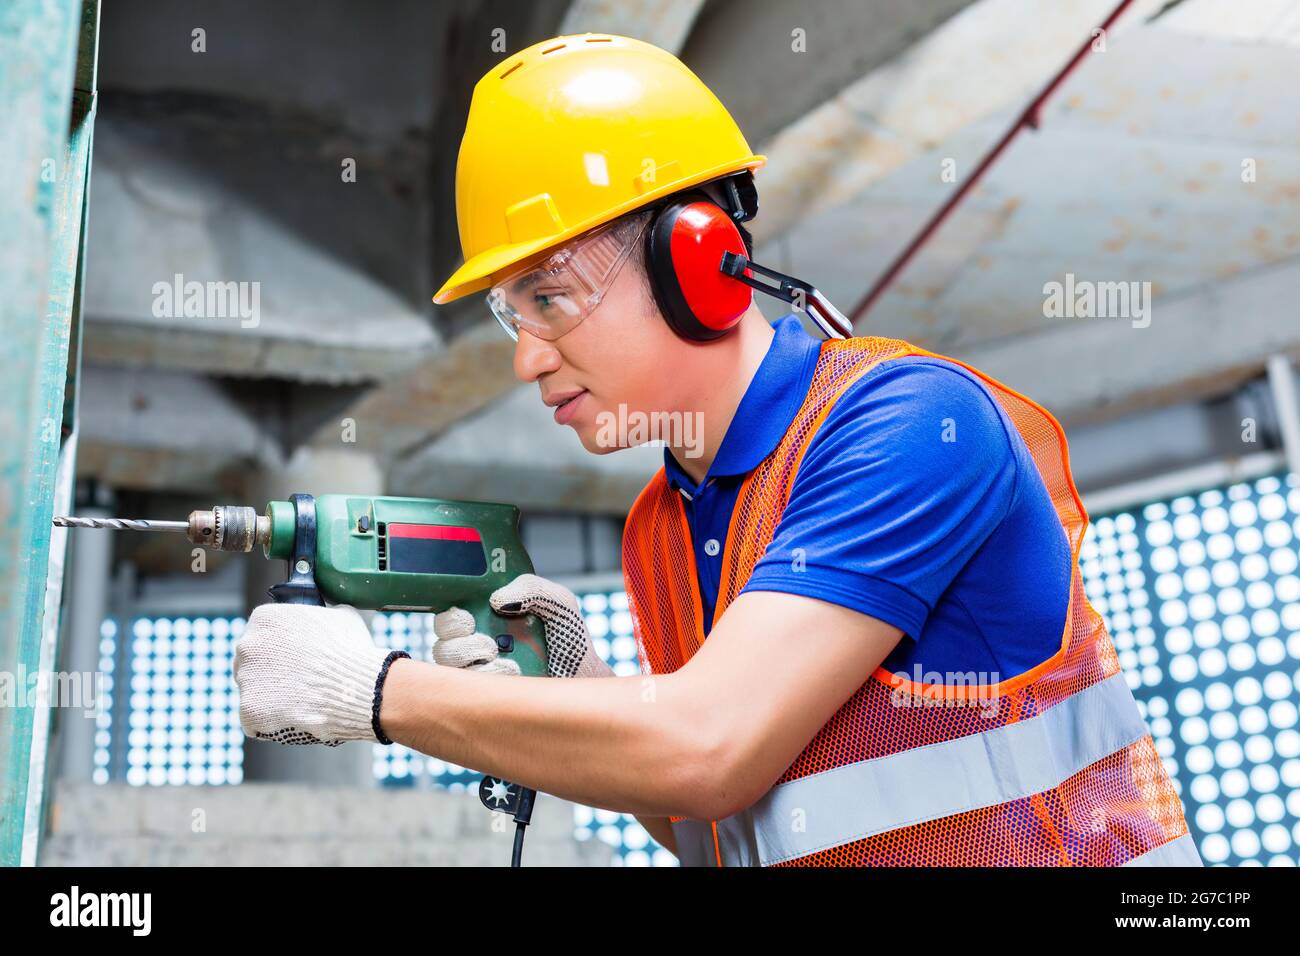 Asiatisch-indonesischer Baumeister oder Arbeiter, der mit einer Maschine oder einem Bohrer, einem Gehörschutz und einem Hardhut oder Helm in einer Wand eines Turmgebäudes oder Konstruktis bohrt Stockfoto